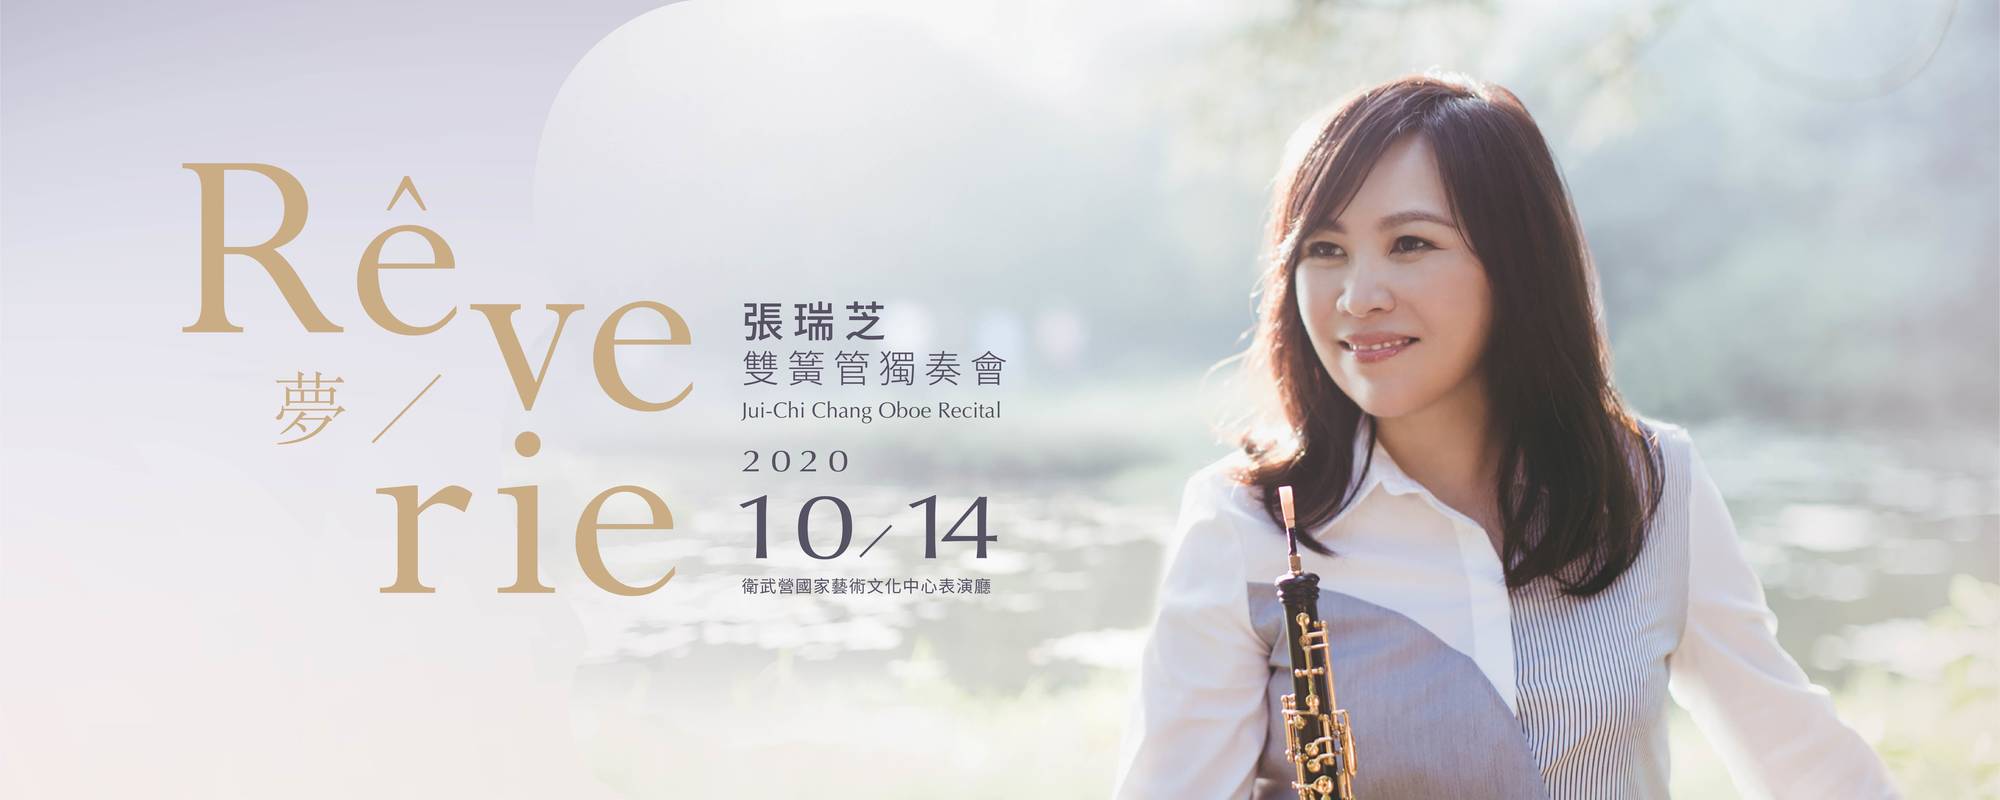 2020 Jui-Chi Chang Oboe Recital- Rêverie